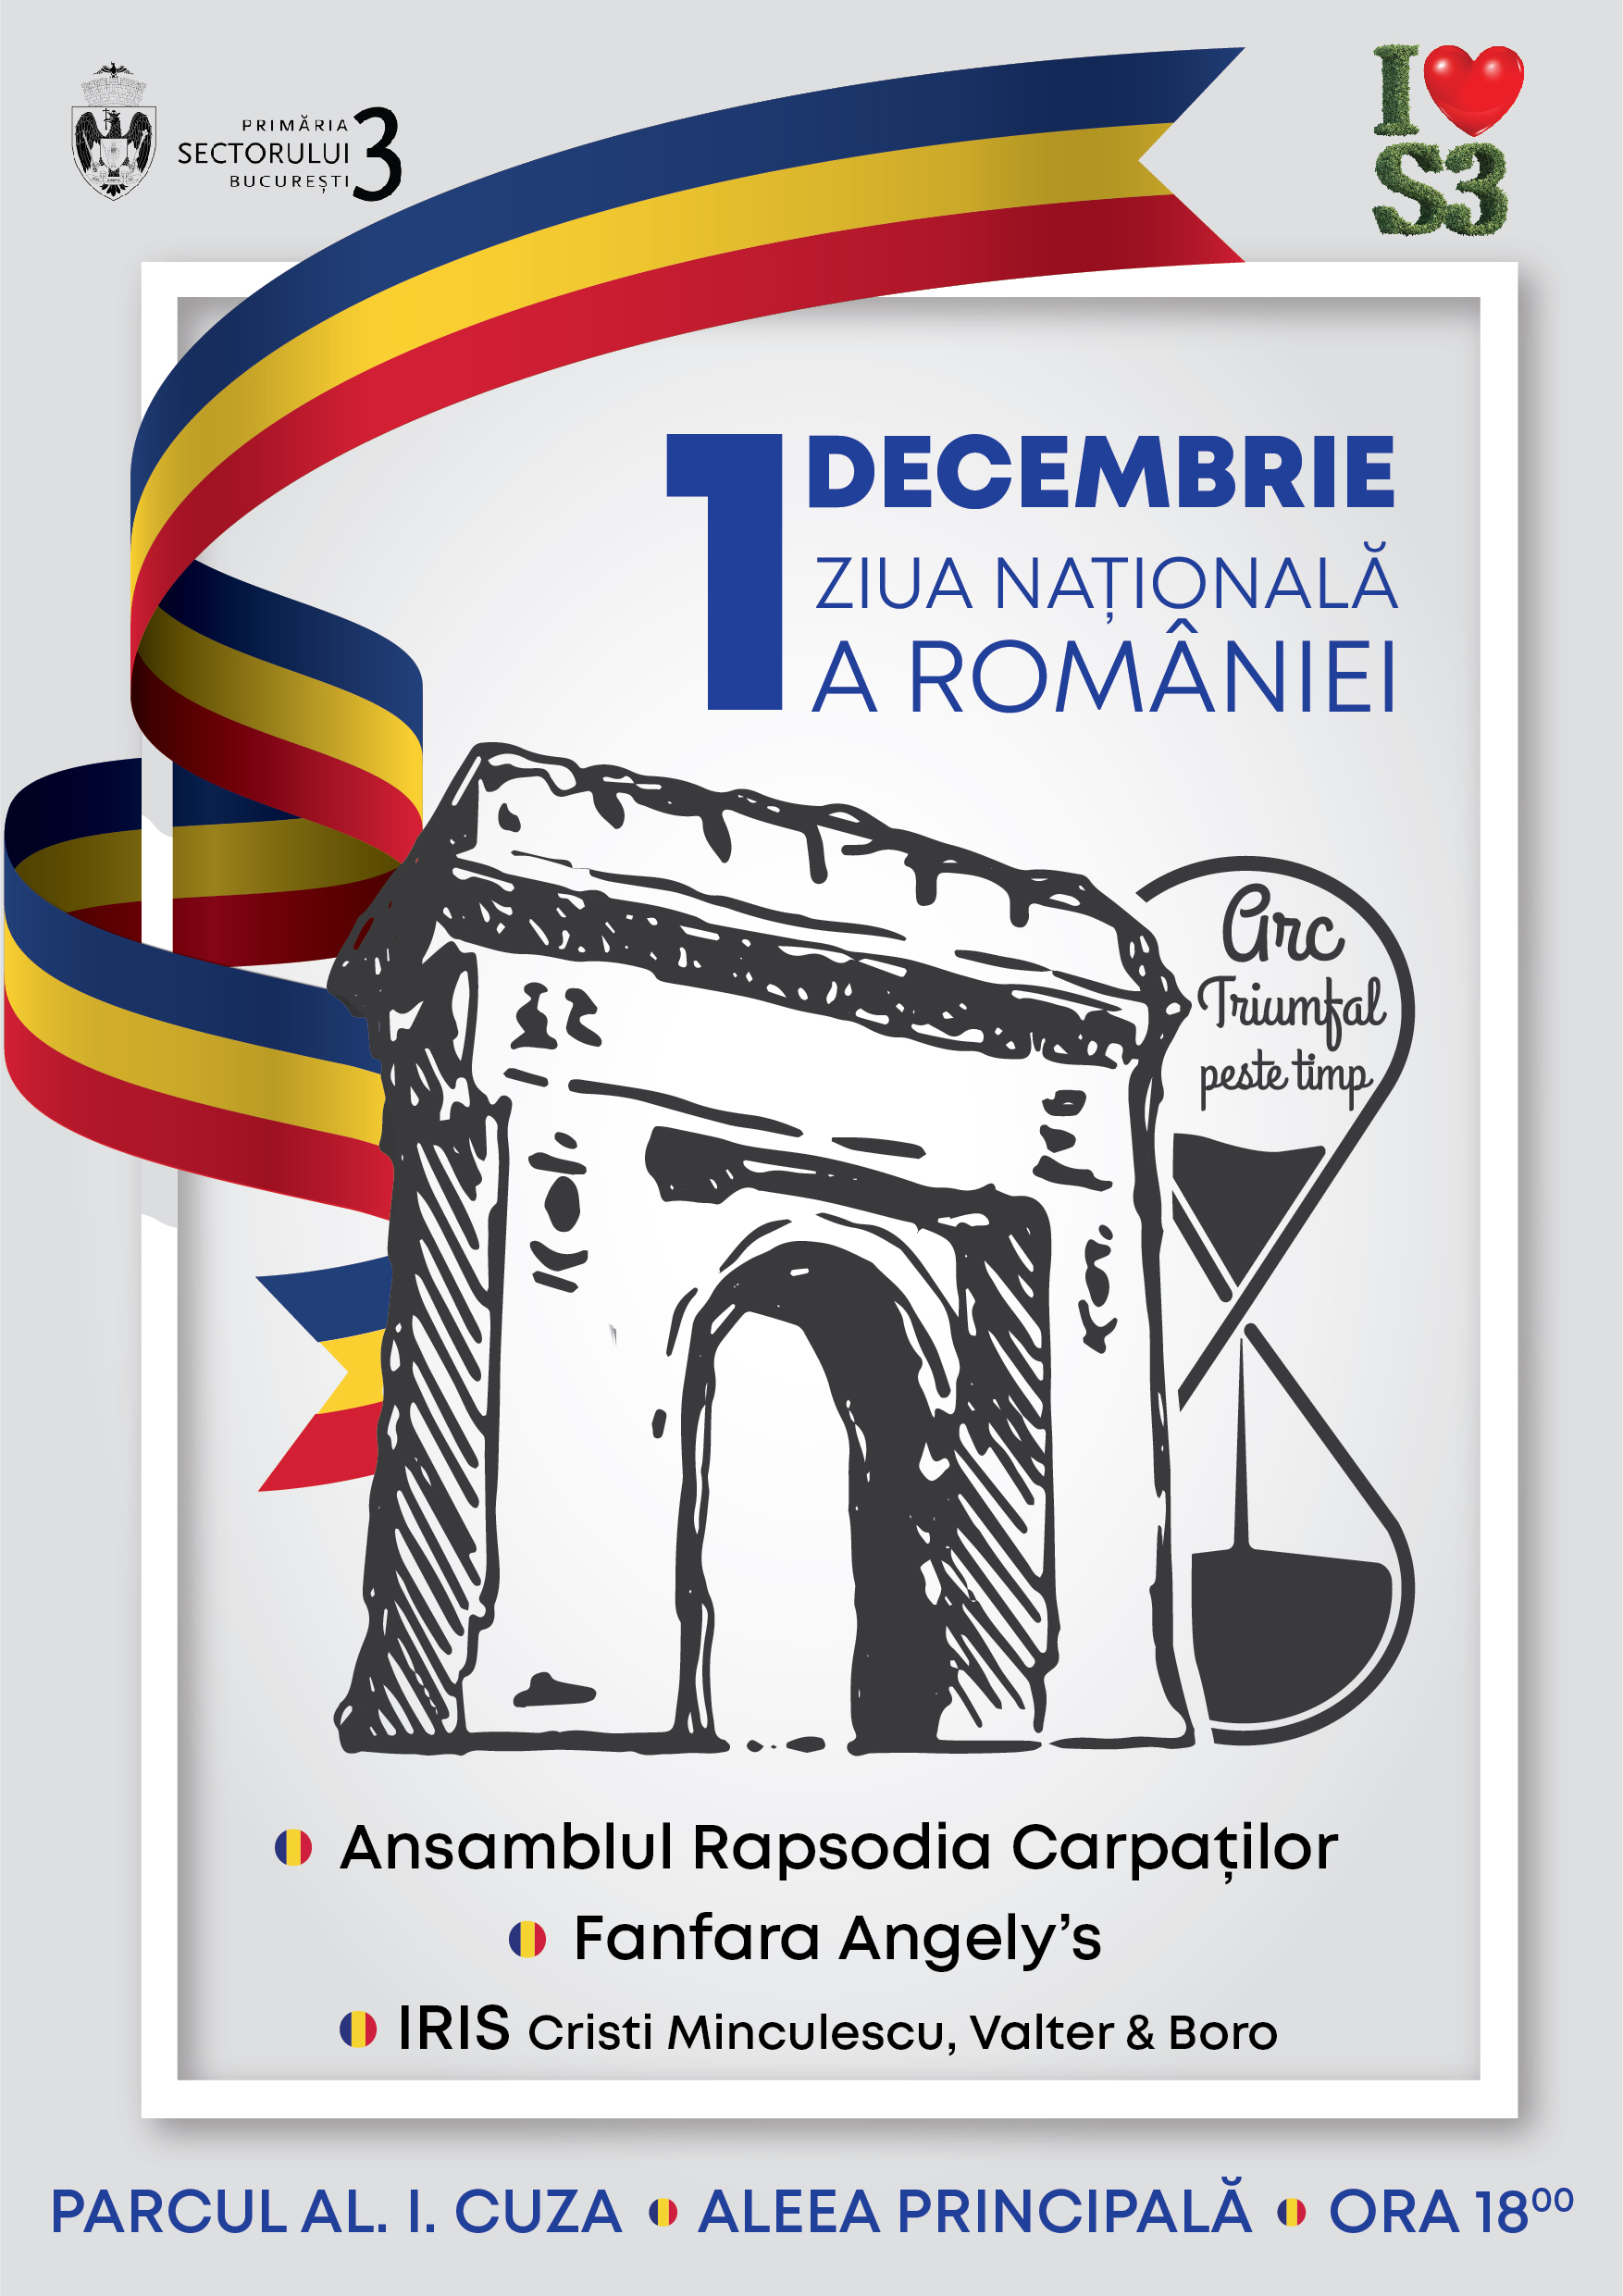 1 Decembrie 2022 Ziua Națională a României Arc triumfal peste timp